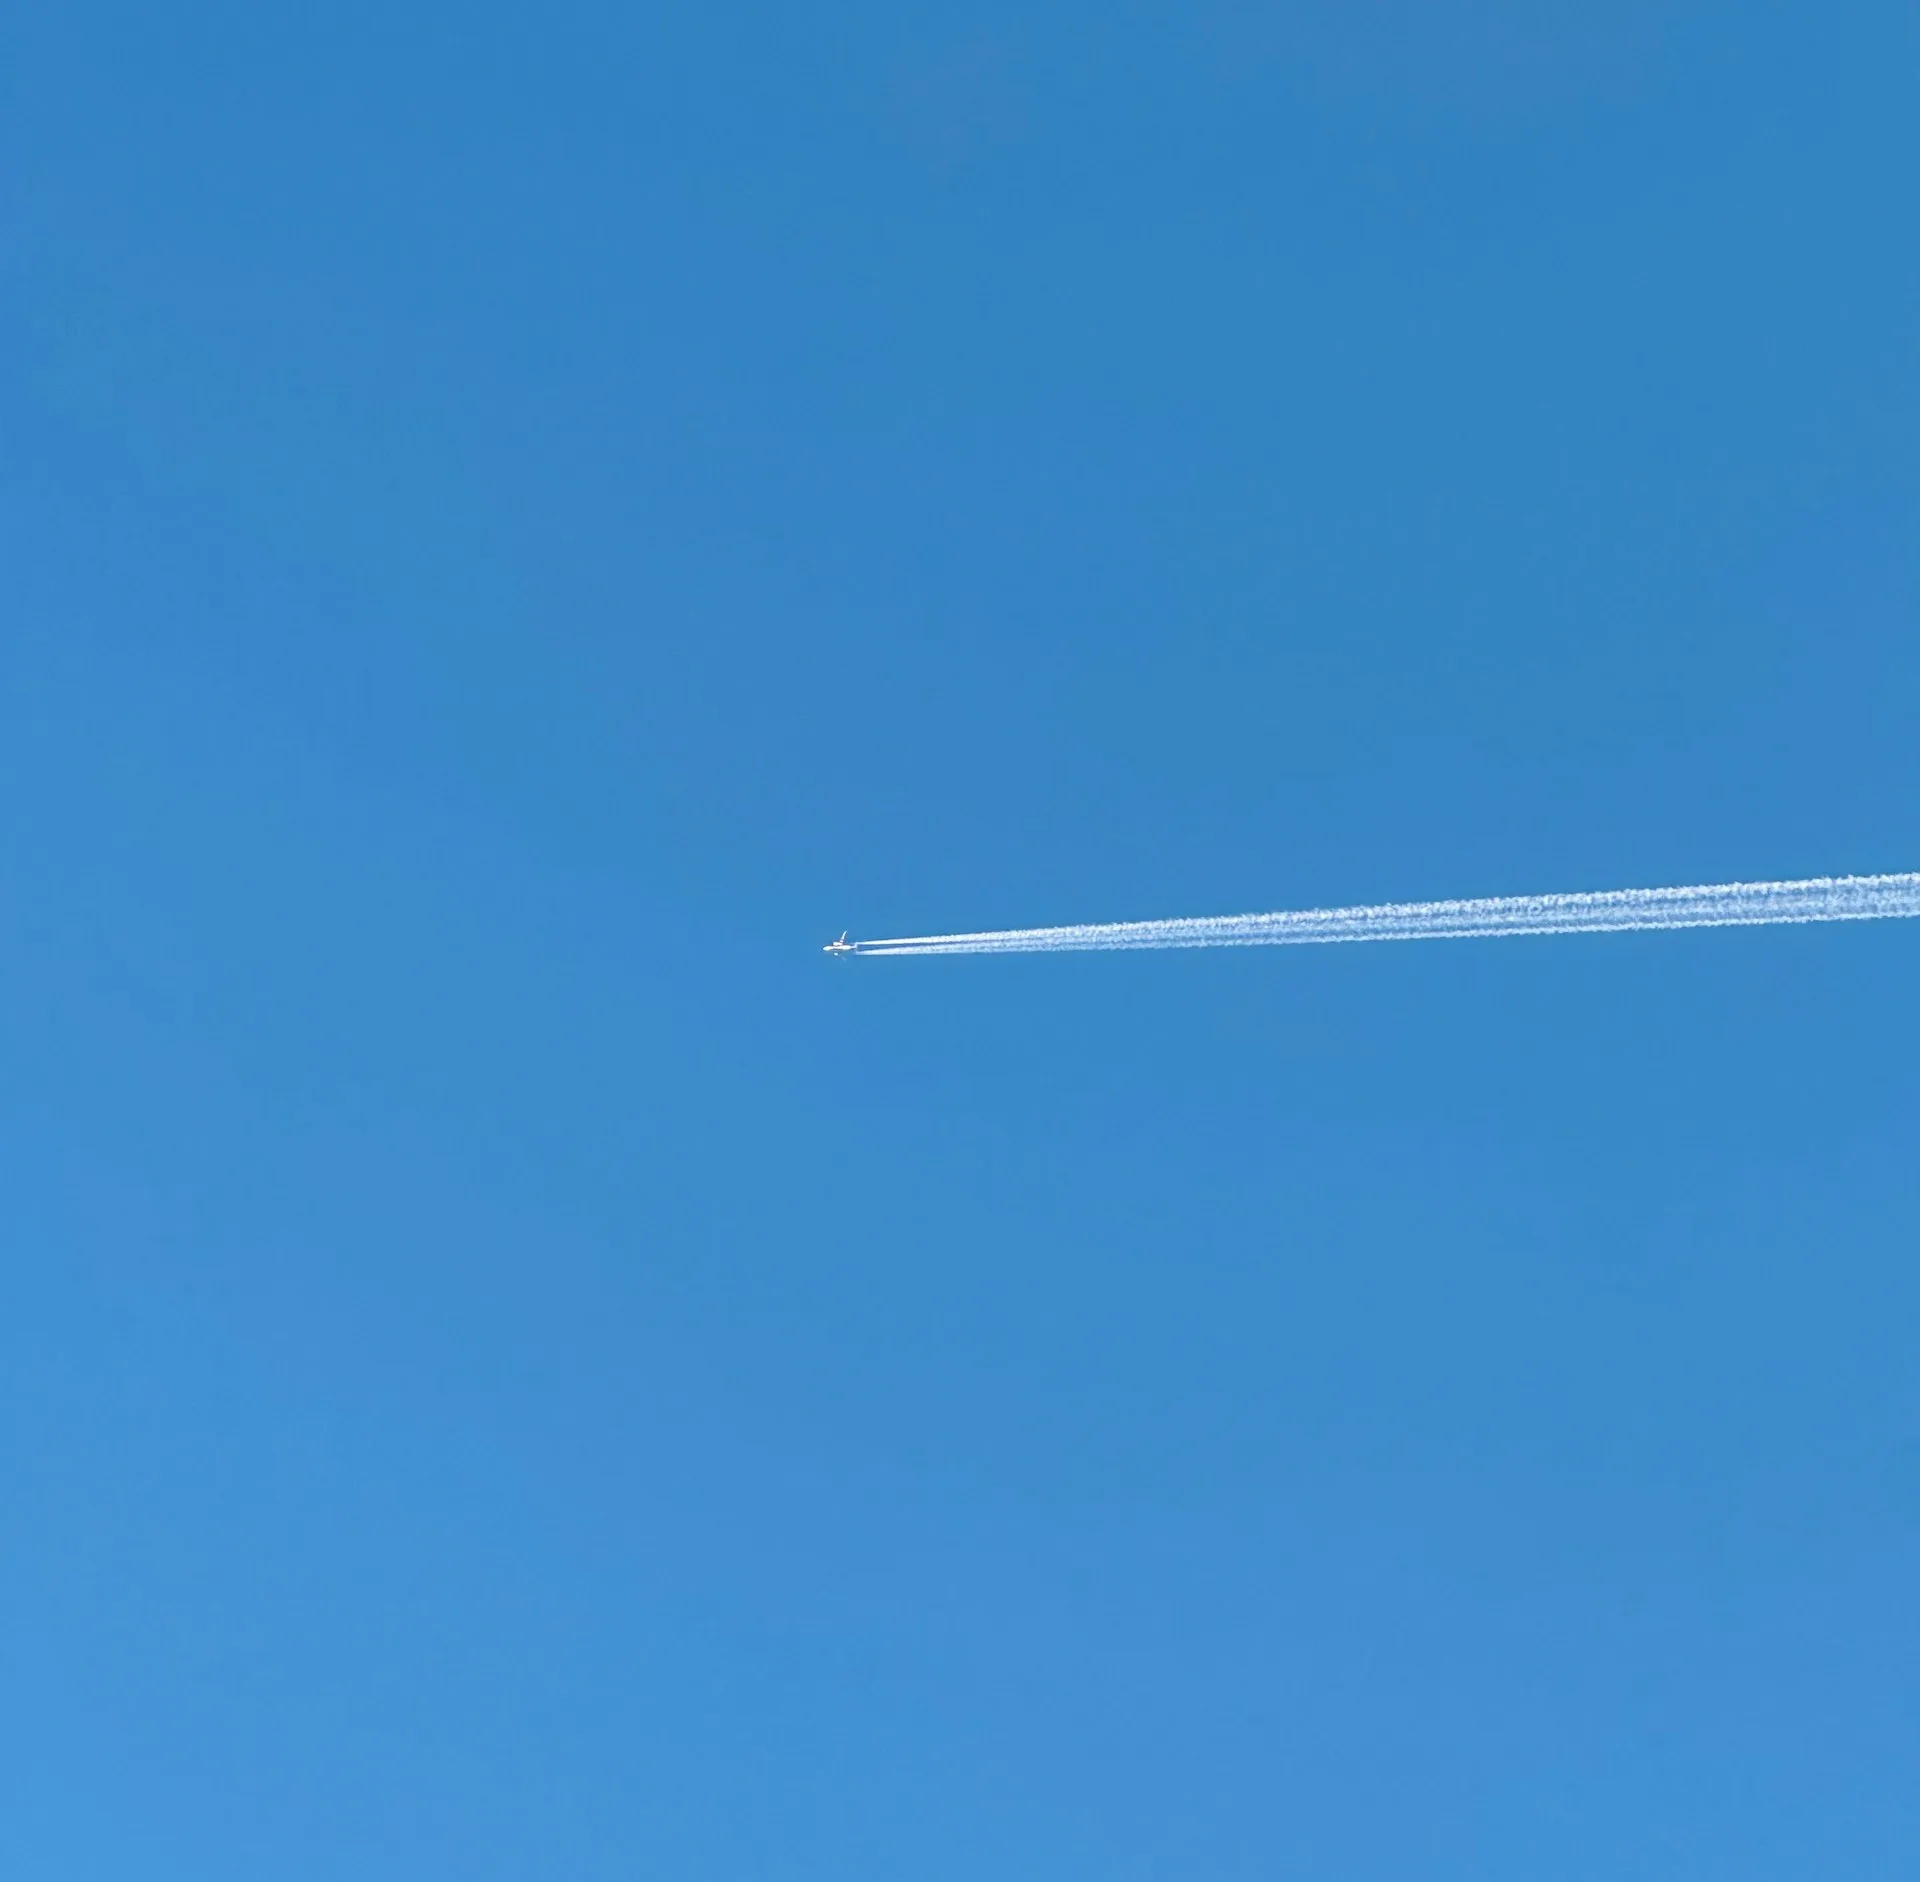 Τι είναι πραγματικά αυτές οι λευκές γραμμές πίσω από τα αεροπλάνα στον ουρανό